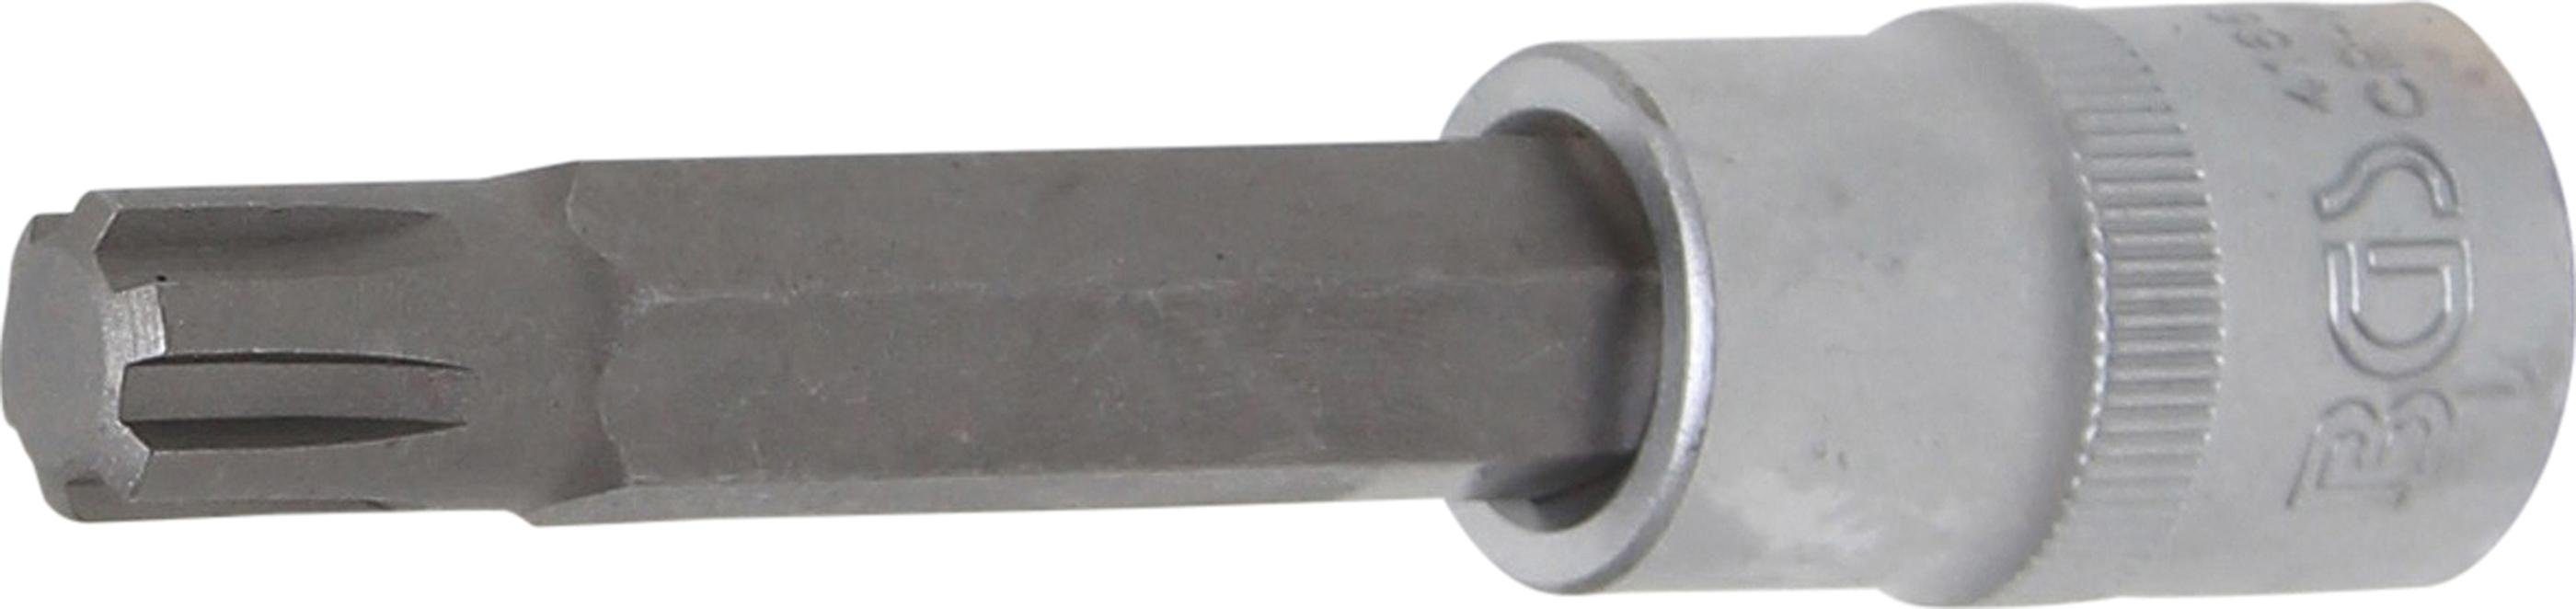 Keil-Profil 12,5 Innenvierkant Bit-Schraubendreher Bit-Einsatz, RIBE) Antrieb Länge BGS technic mm (1/2), M12 100 mm, (für